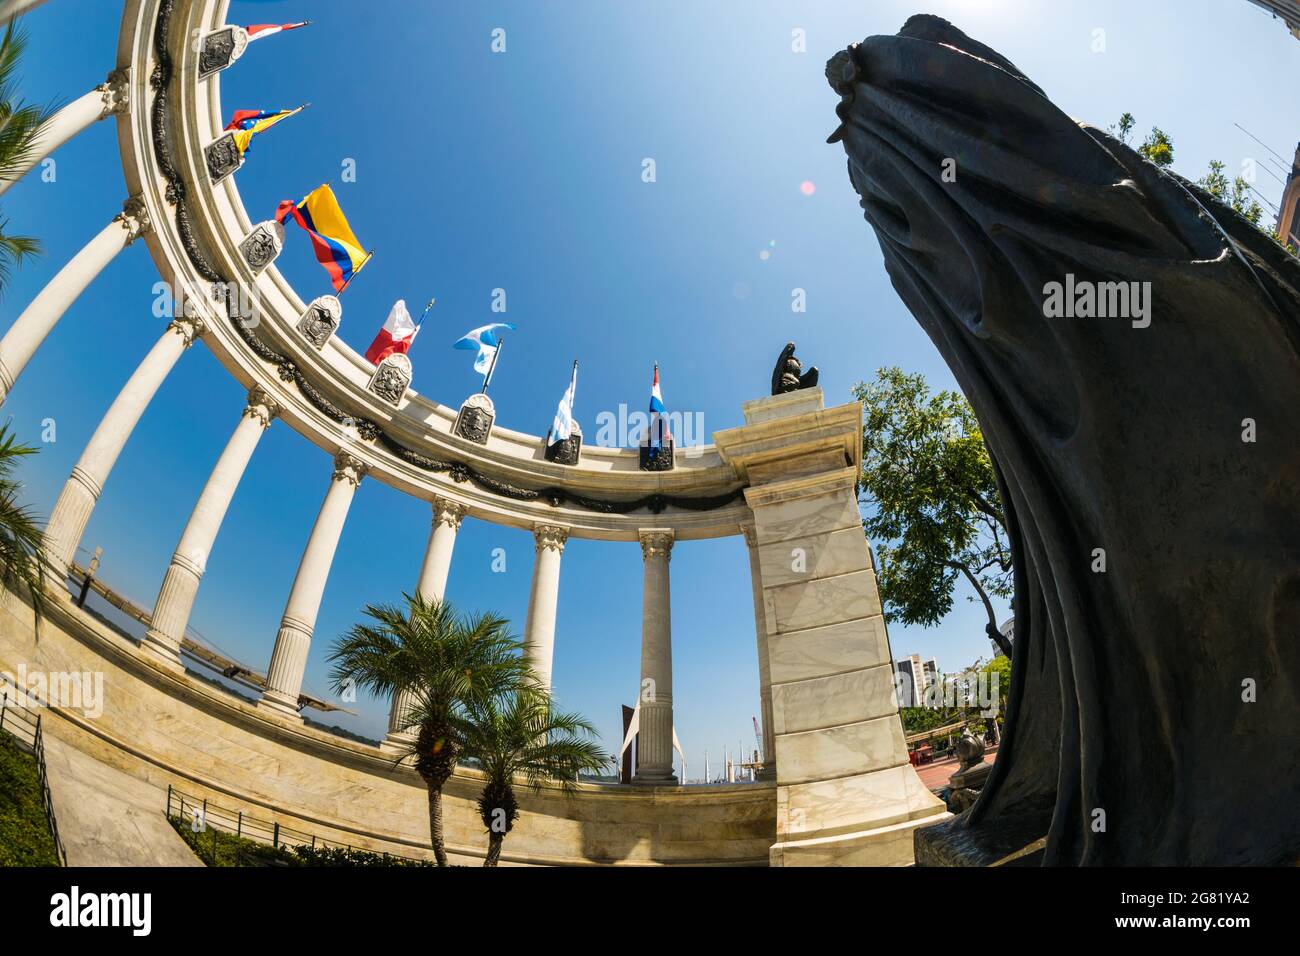 Monumento a La Rotonda en Malecón Simón Bolívar, Guayaquil, Ecuador. Un día soleado sin nubes de este lugar turístico. Foto de stock